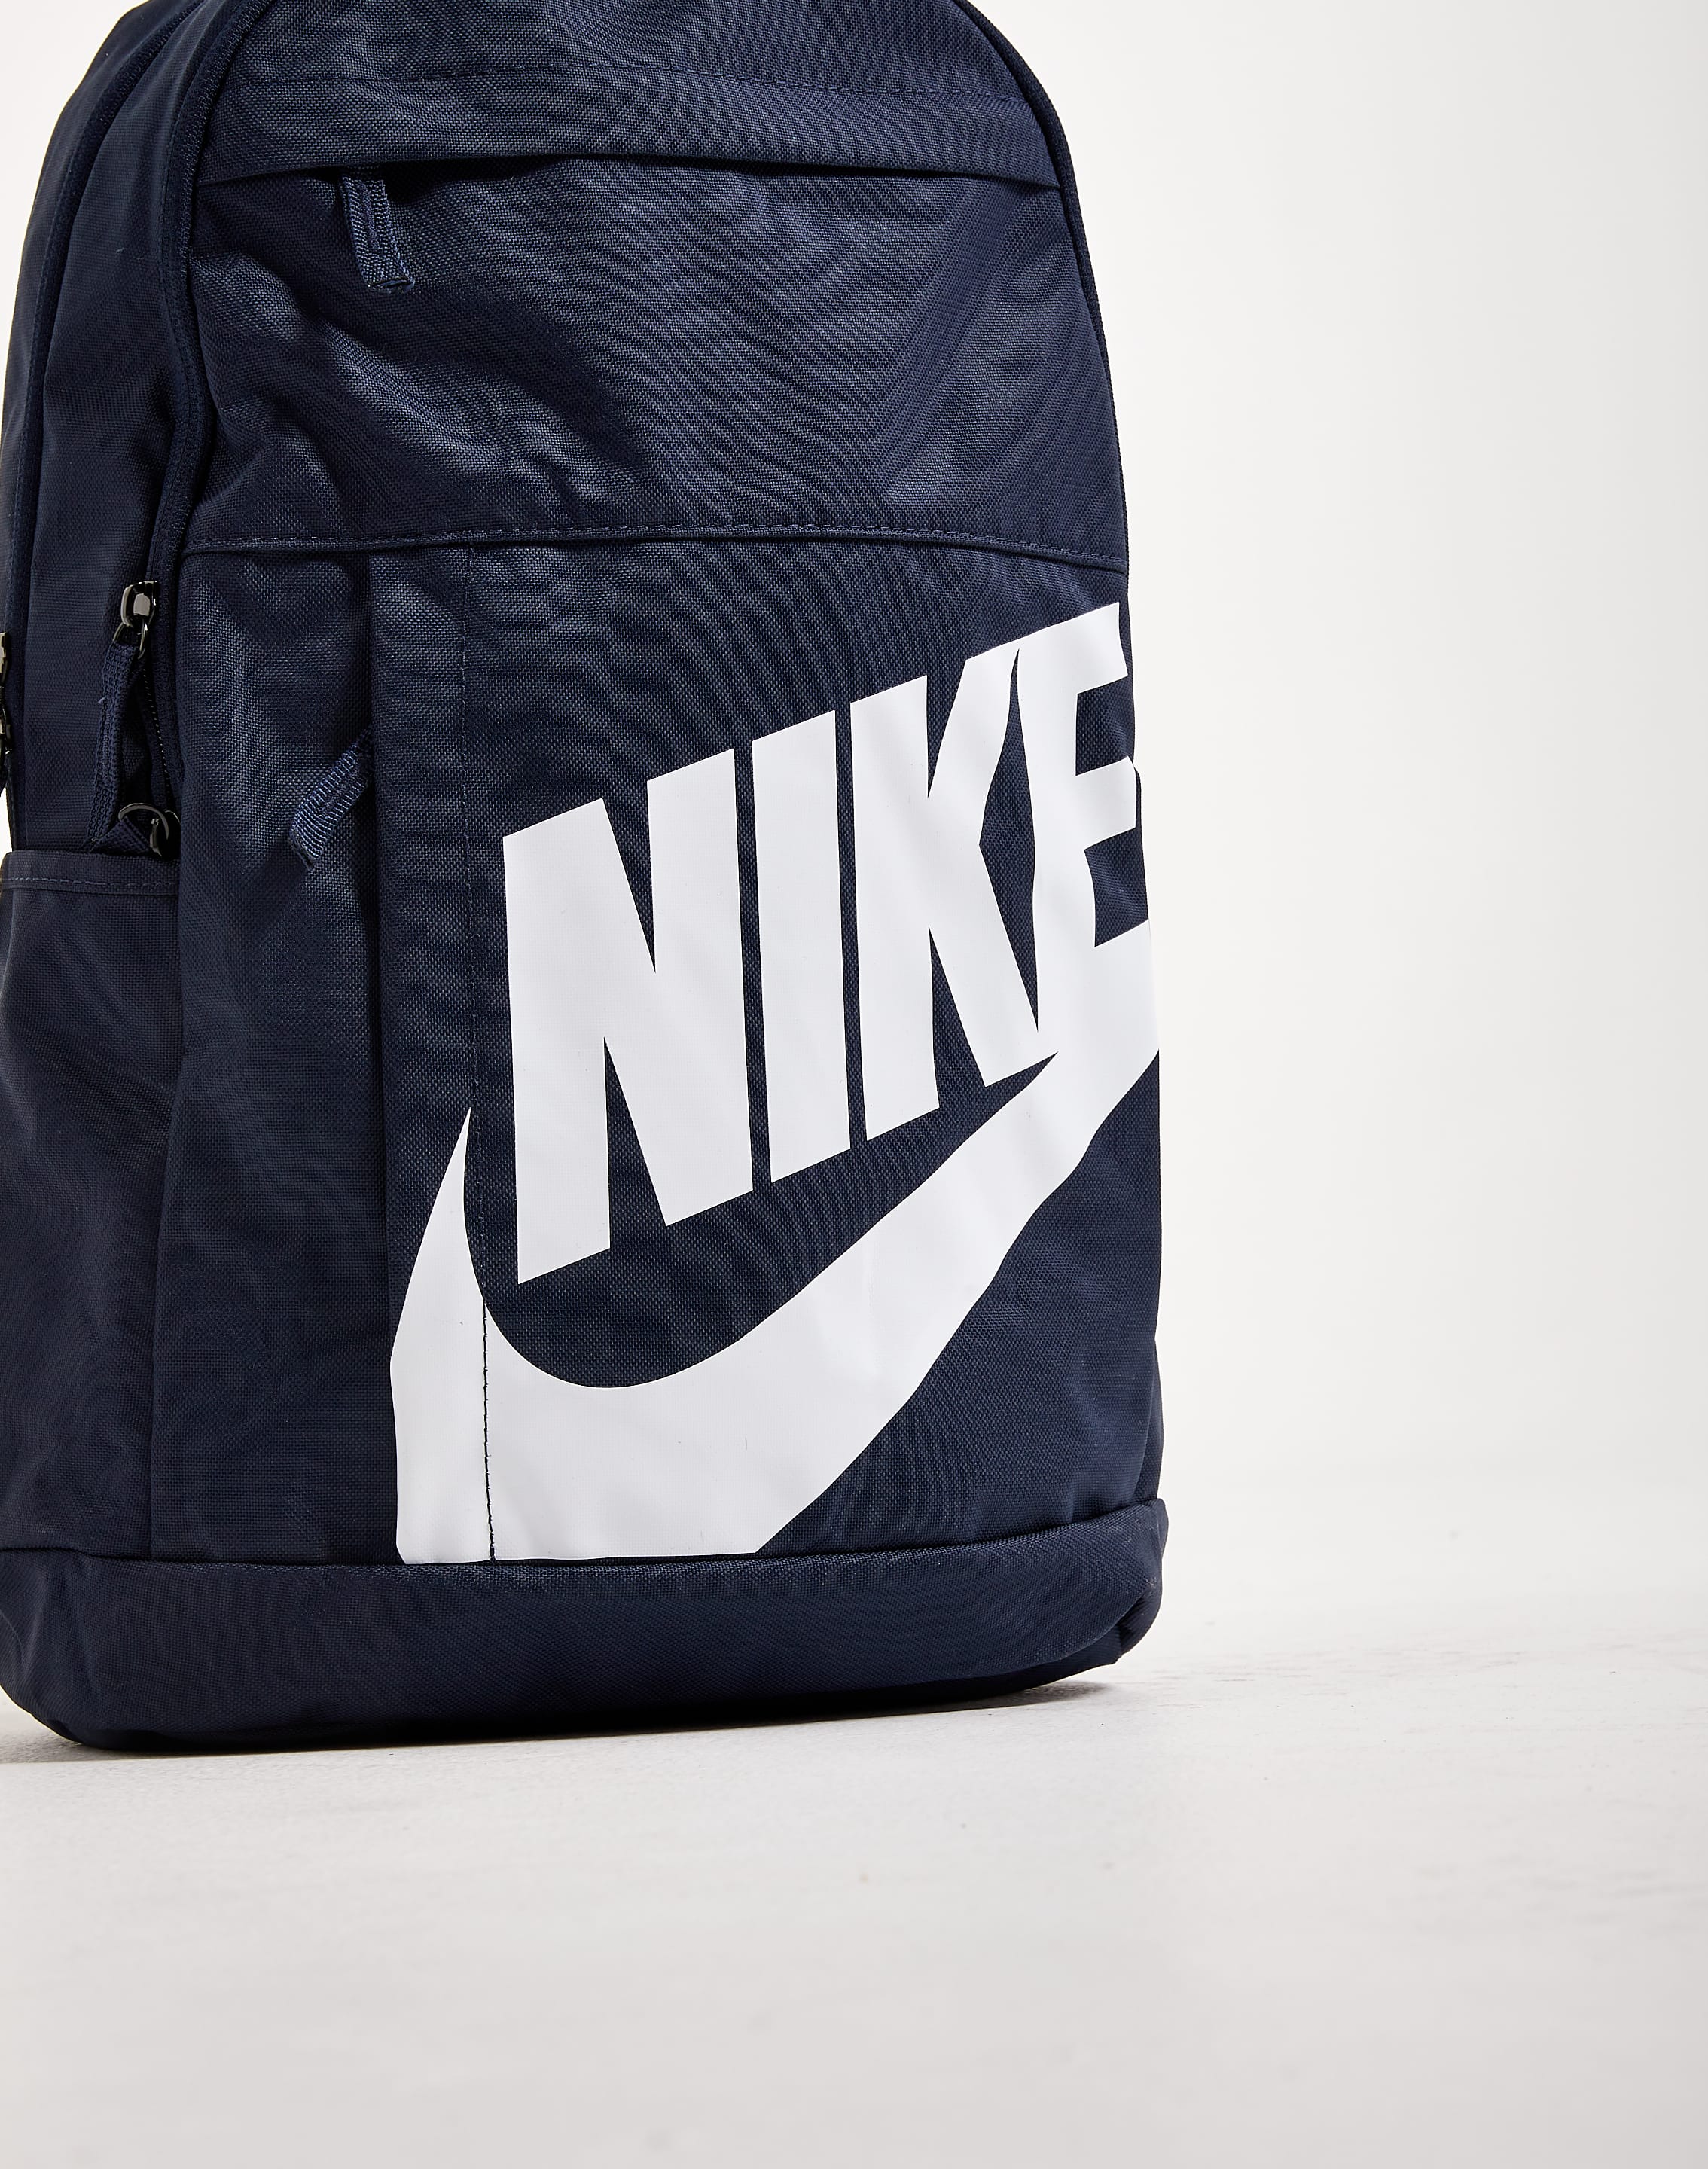  Nike Elemental Backpack (Black/Ash Slate) : Clothing